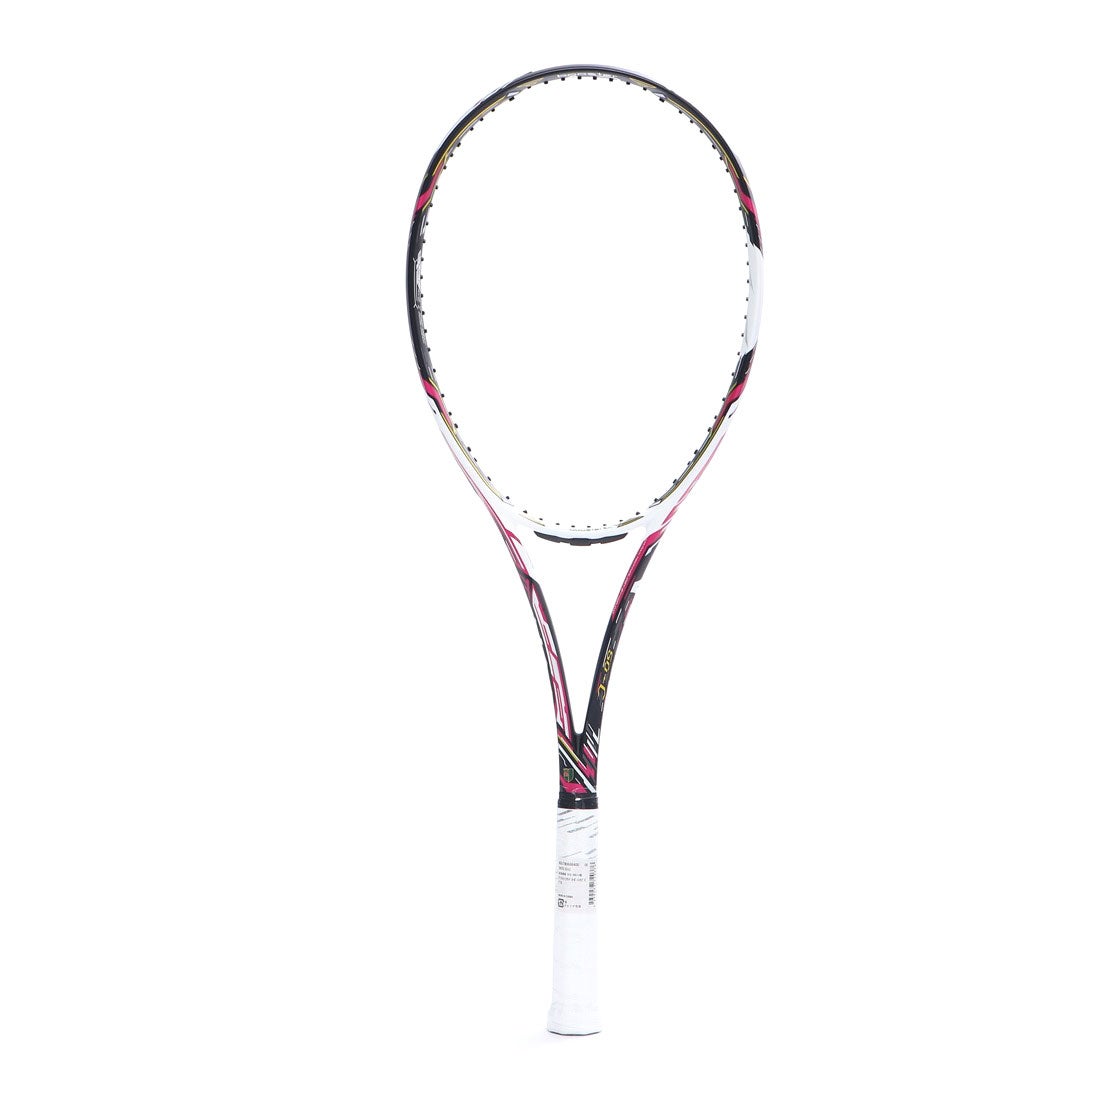 ミズノ MIZUNO 軟式テニス 未張りラケット DIOS 50-C(ディオス50シー) 63JTN06664 -ファッション通販